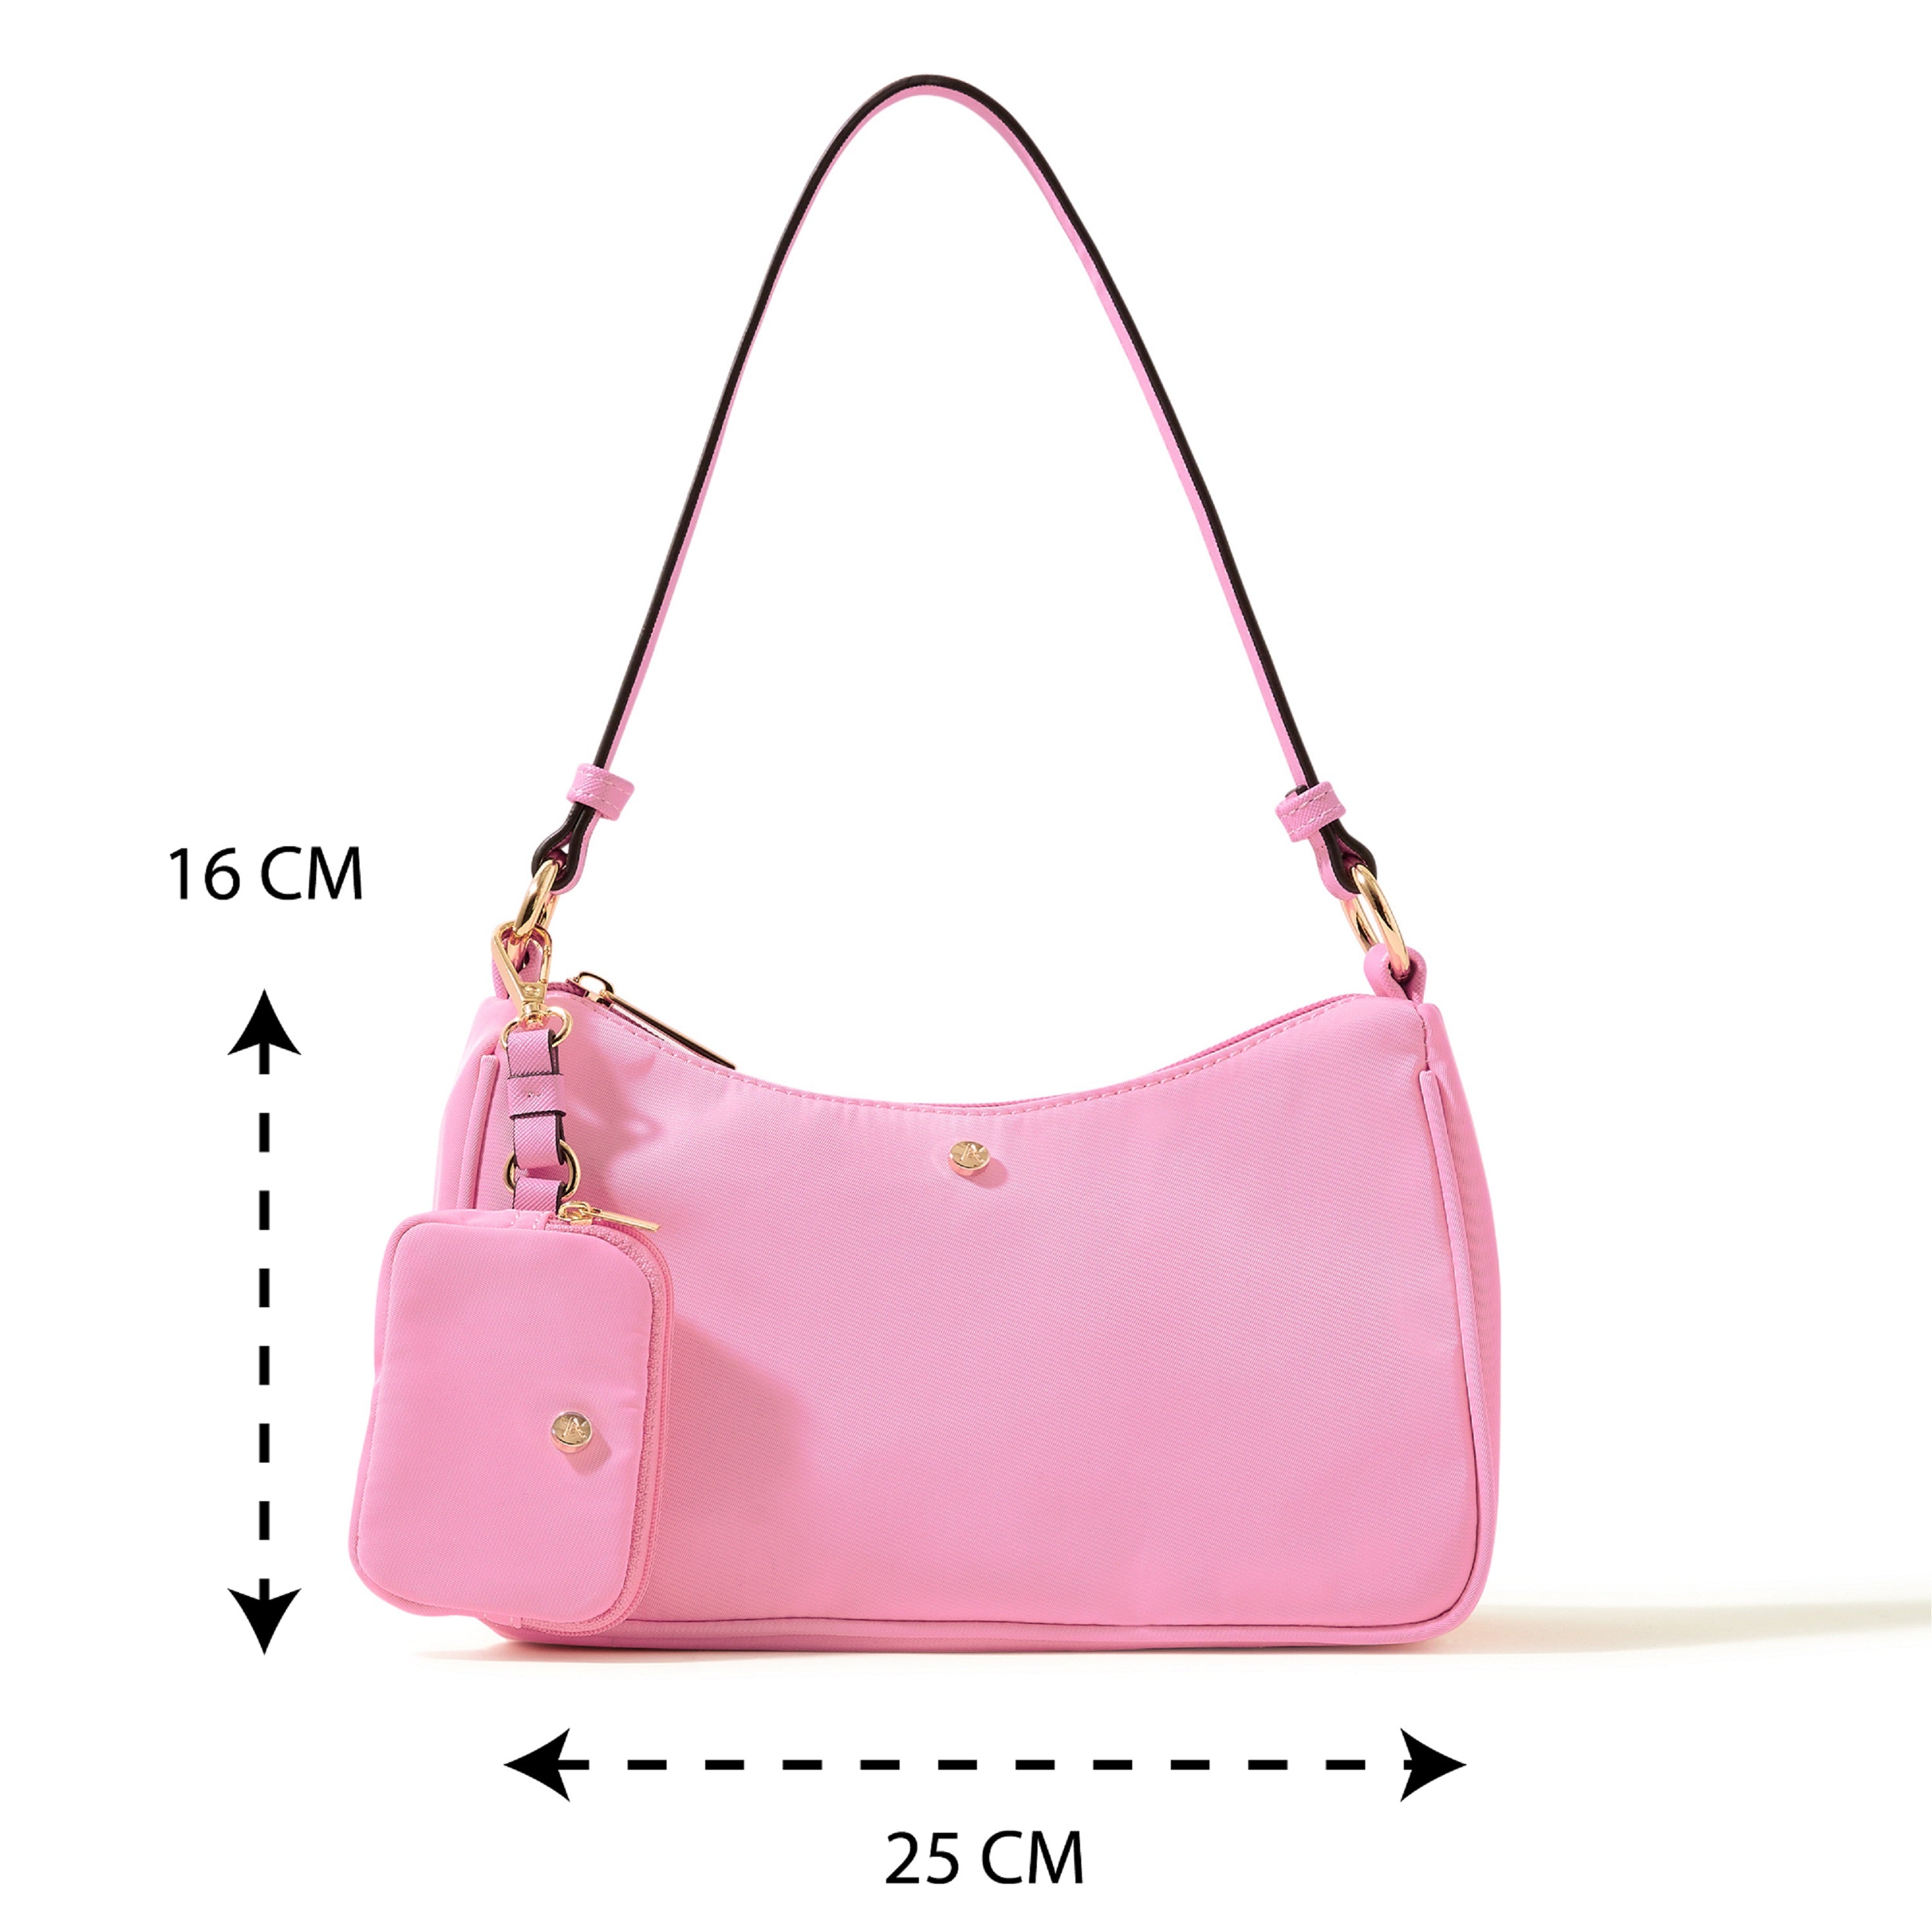 Accessorize London Women's Faux Leather Pink Nylon Shoulder Bag